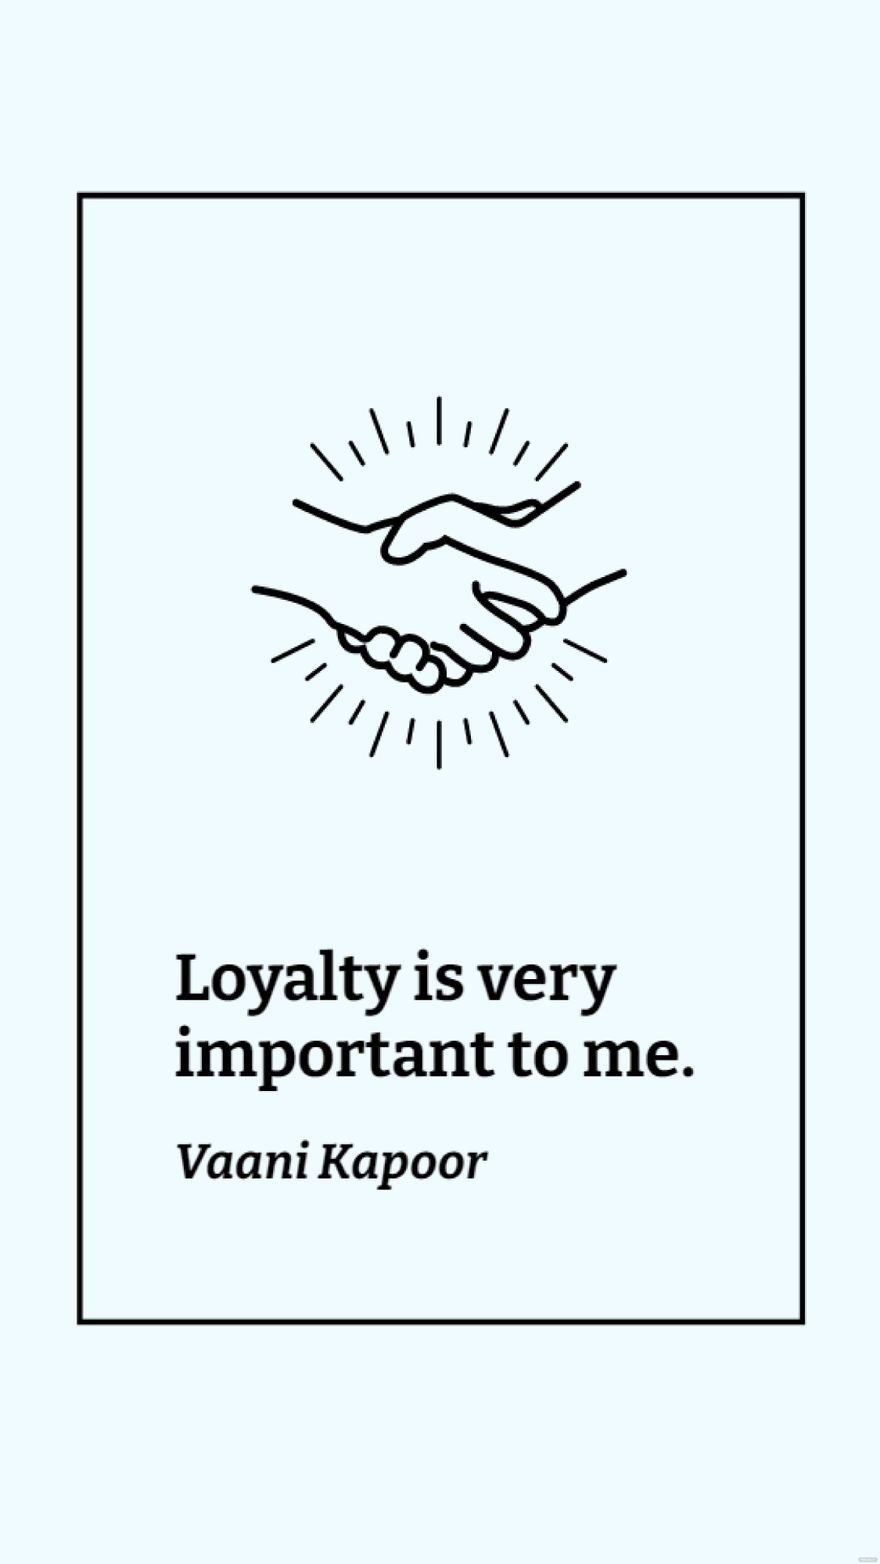 Free Vaani Kapoor - Loyalty is very important to me. in JPG